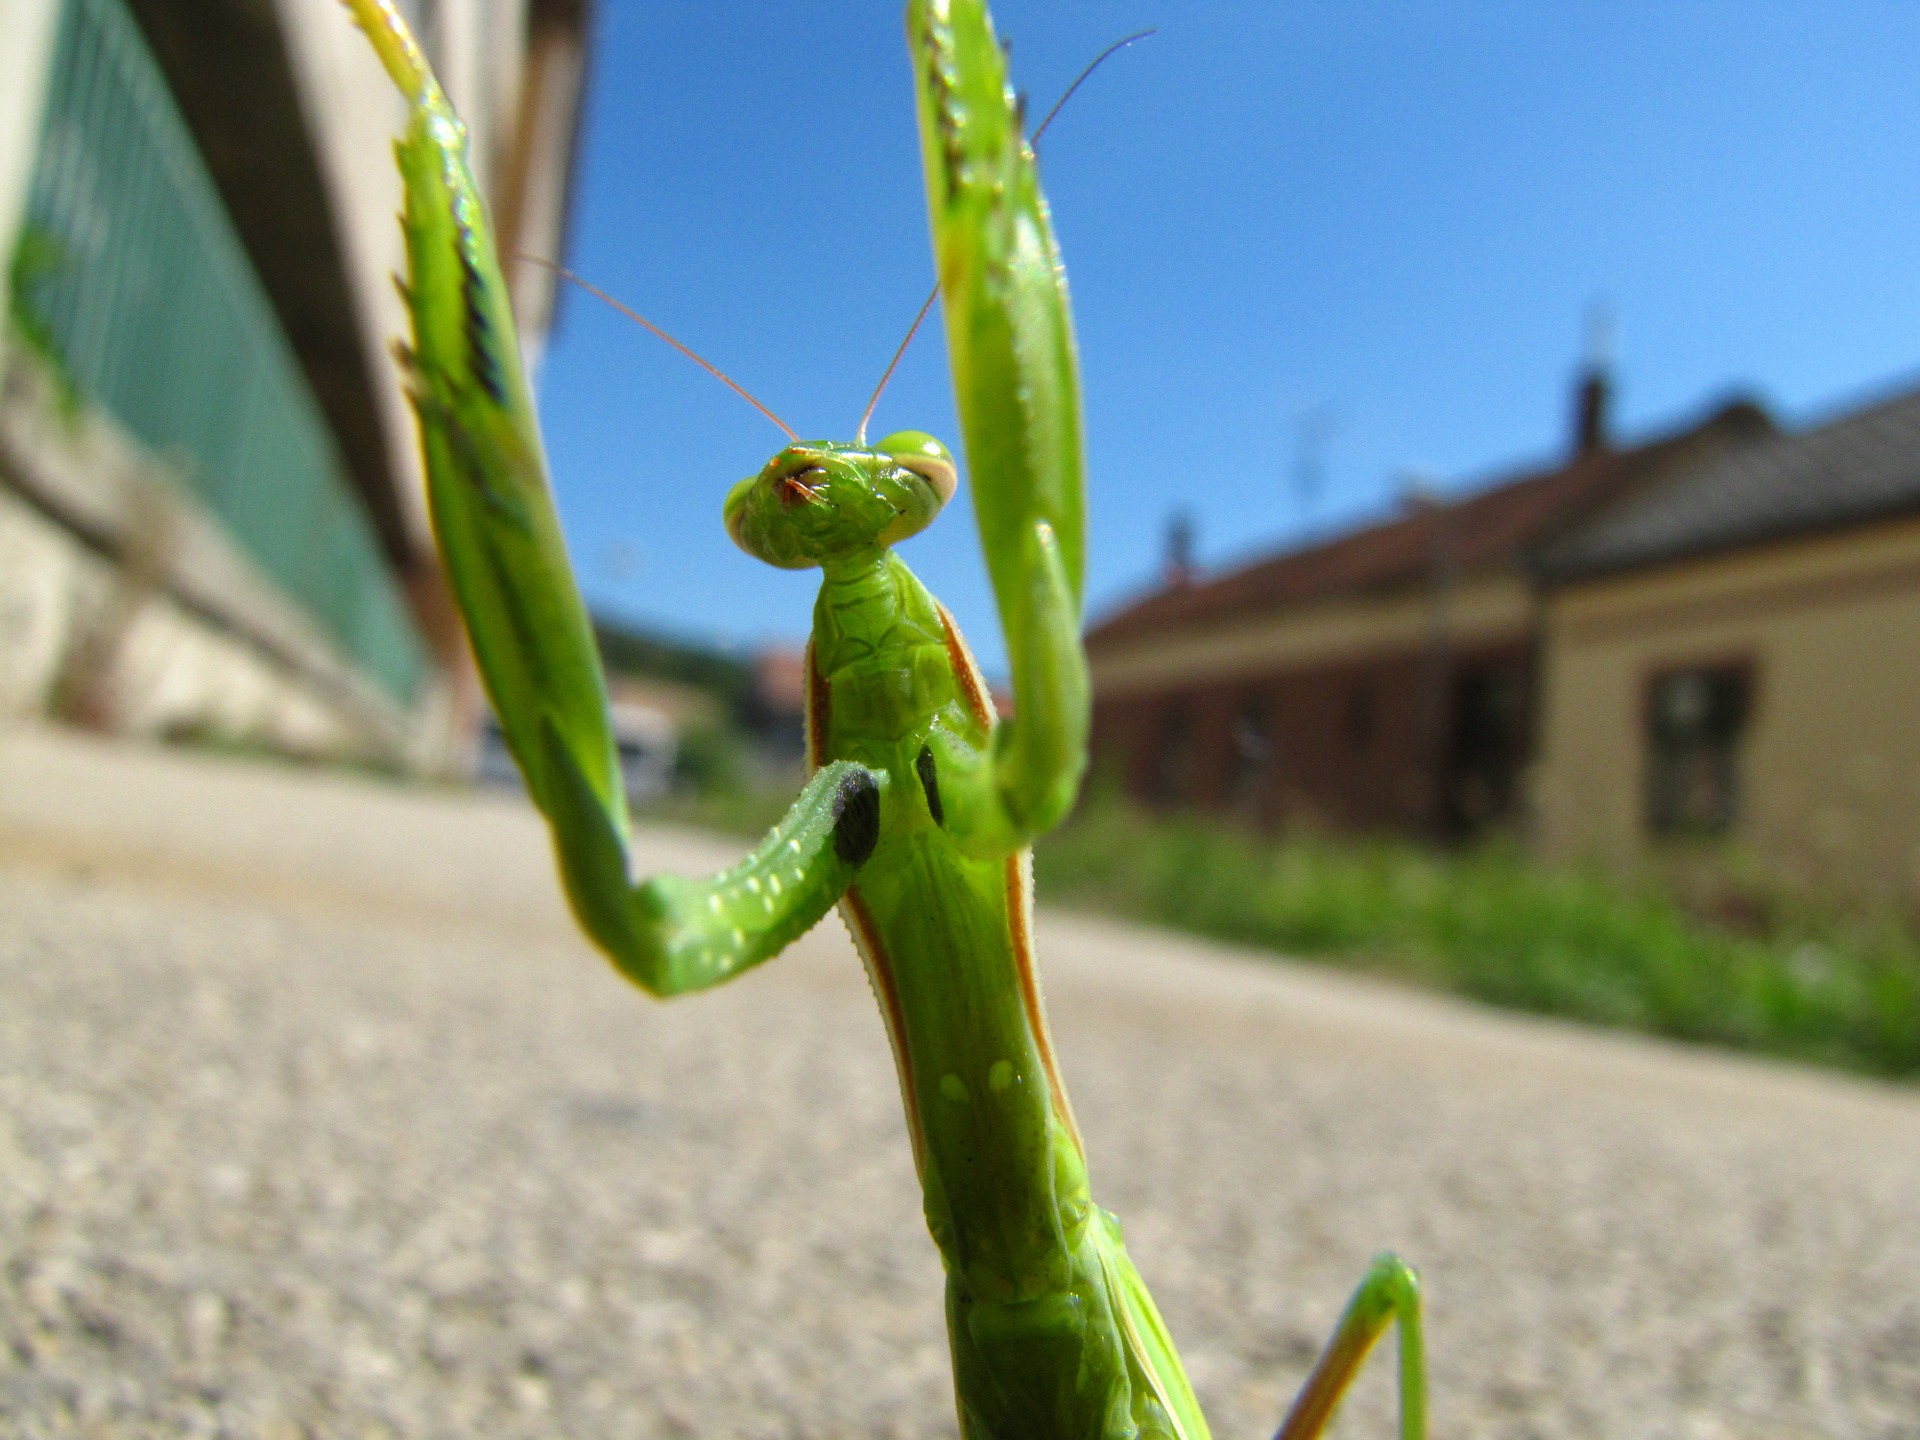 praying-mantis-180347_1920_pixabay.jpg